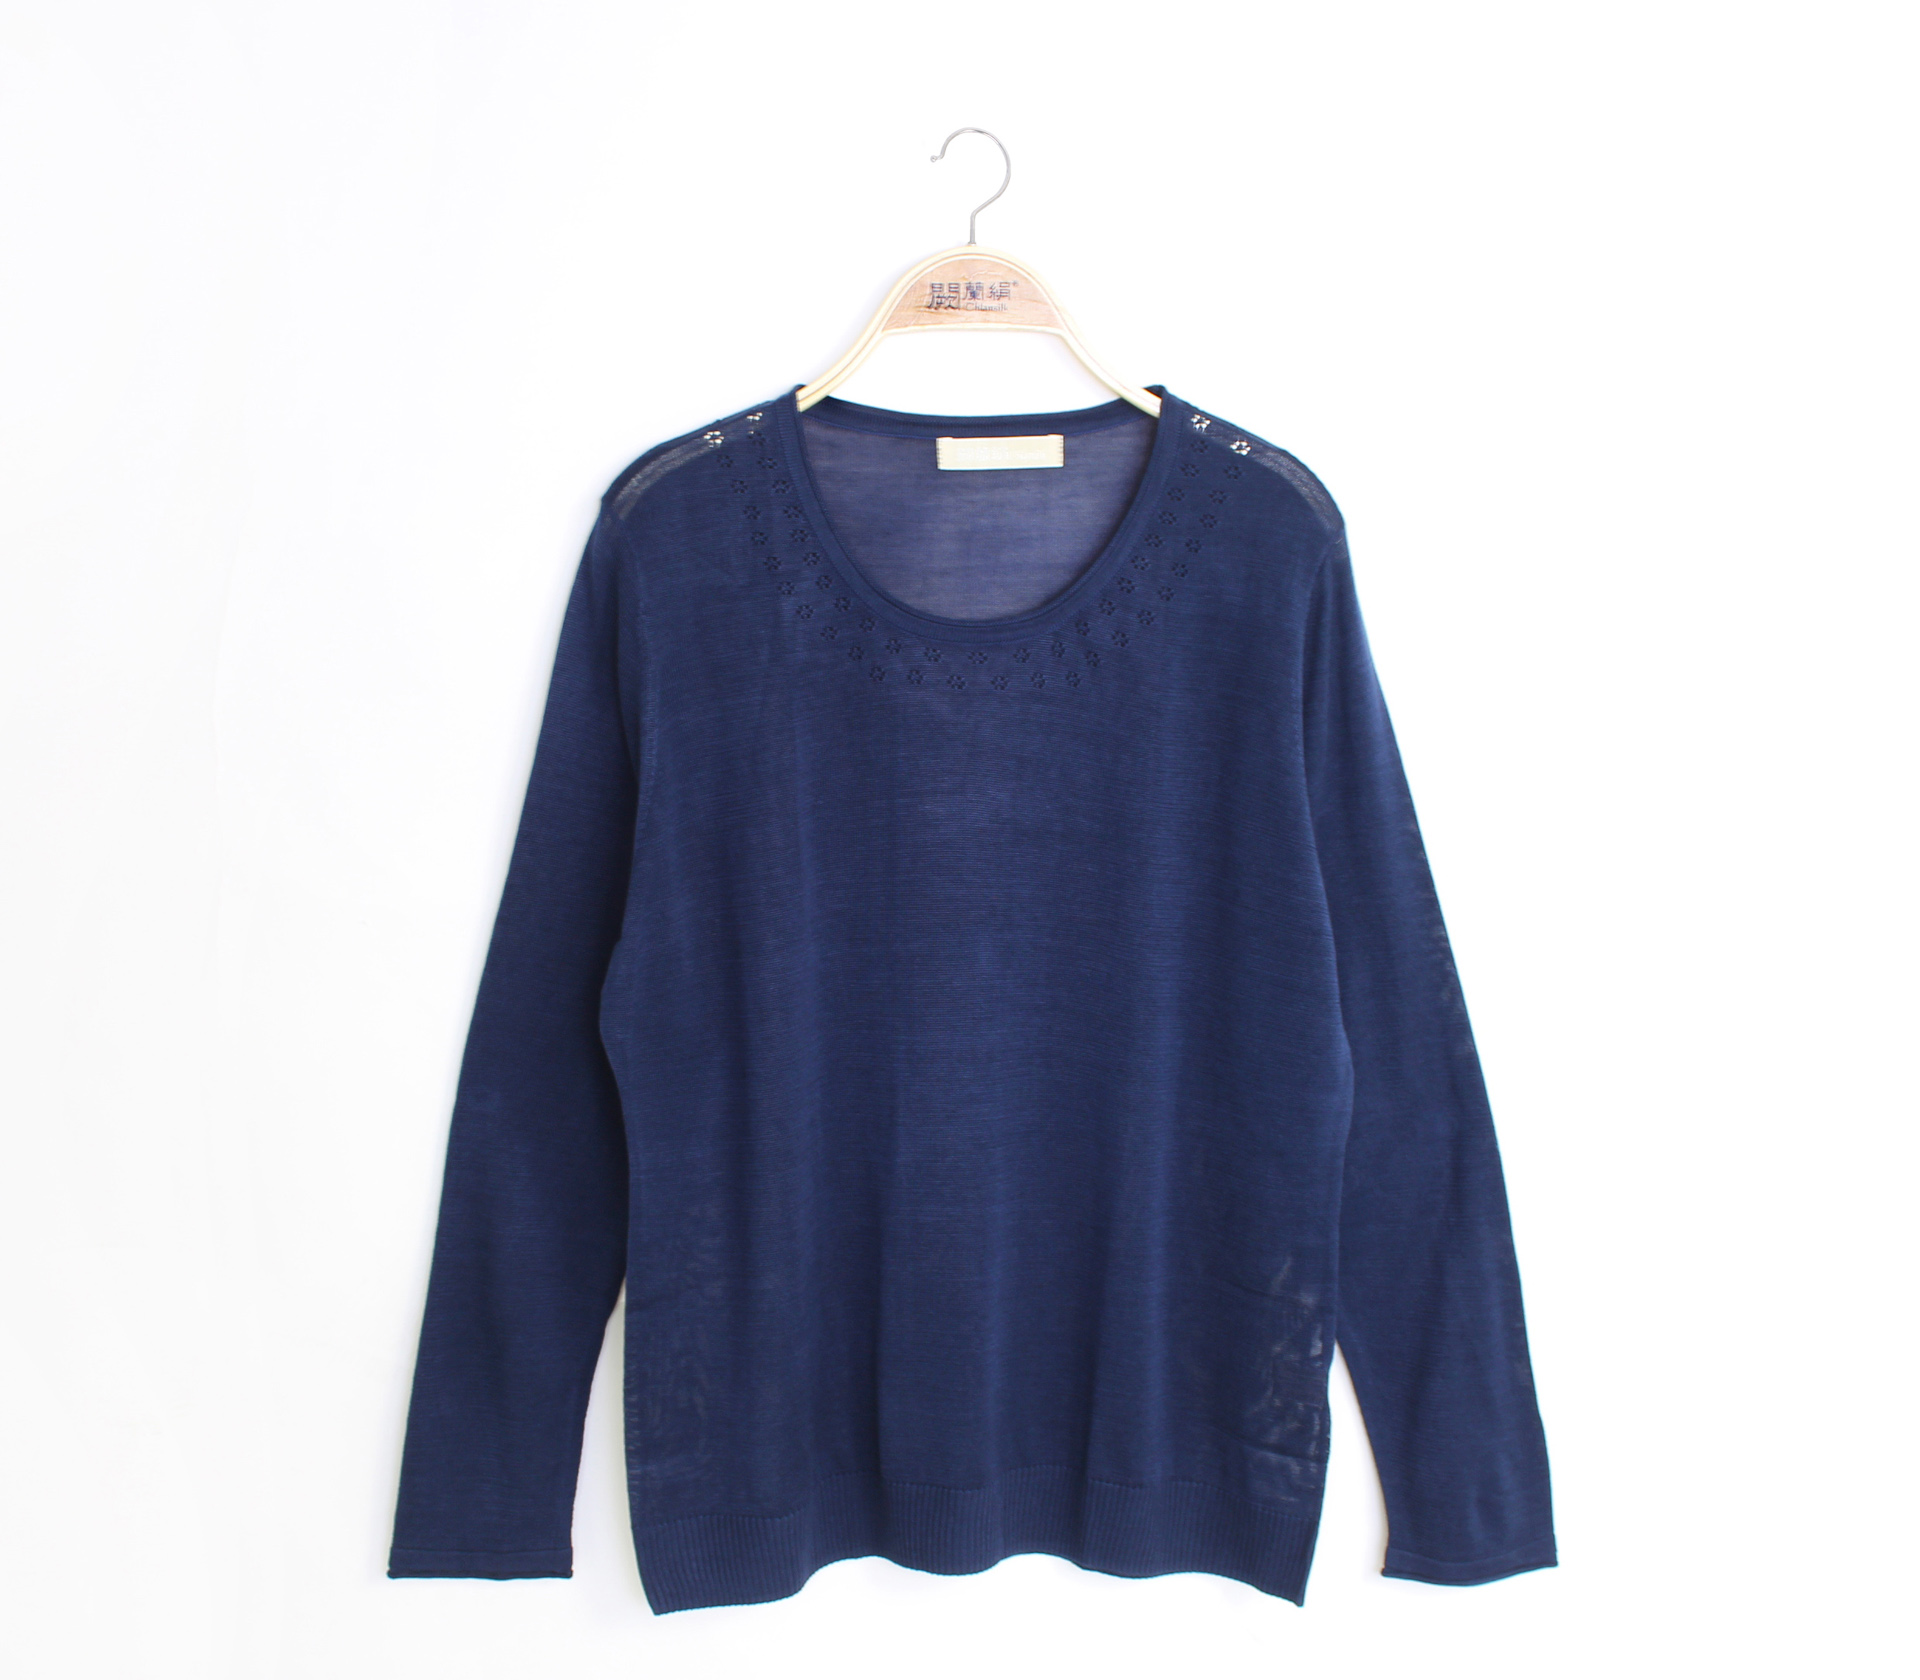 闕蘭絹舒適感100%蠶絲針織上衣-611(藍)